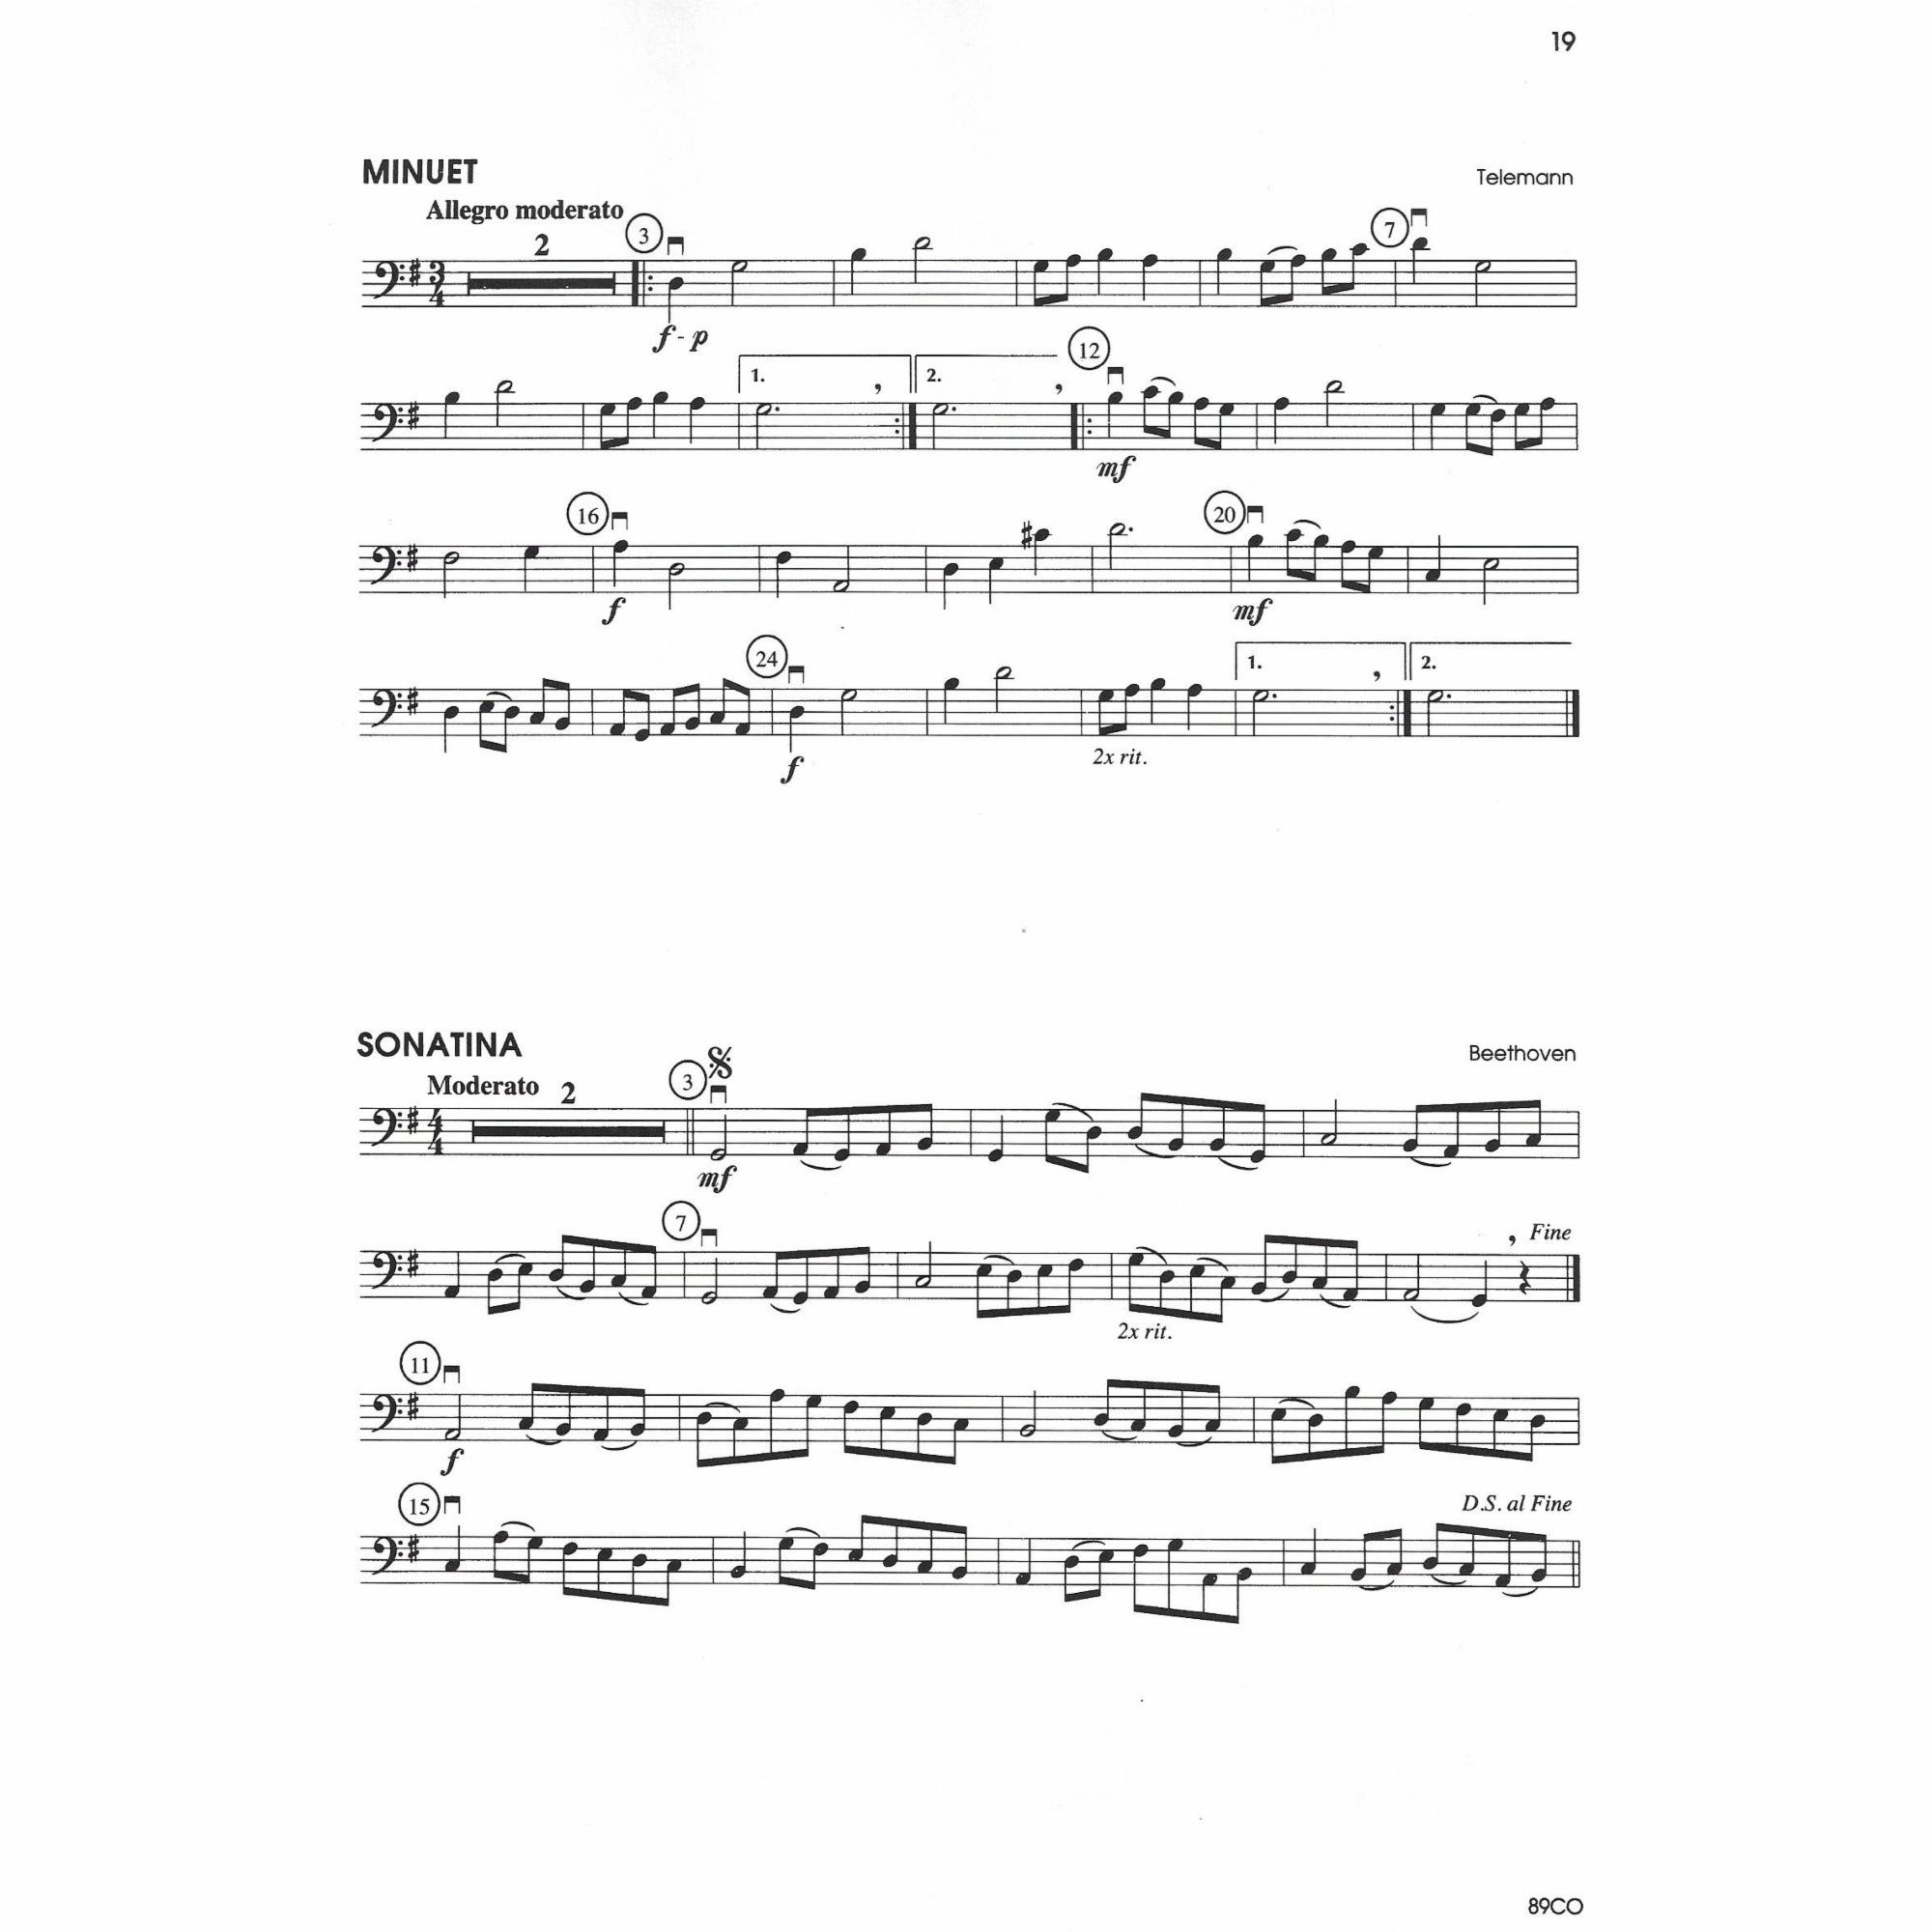 Sample: Cello (Pg. 19)